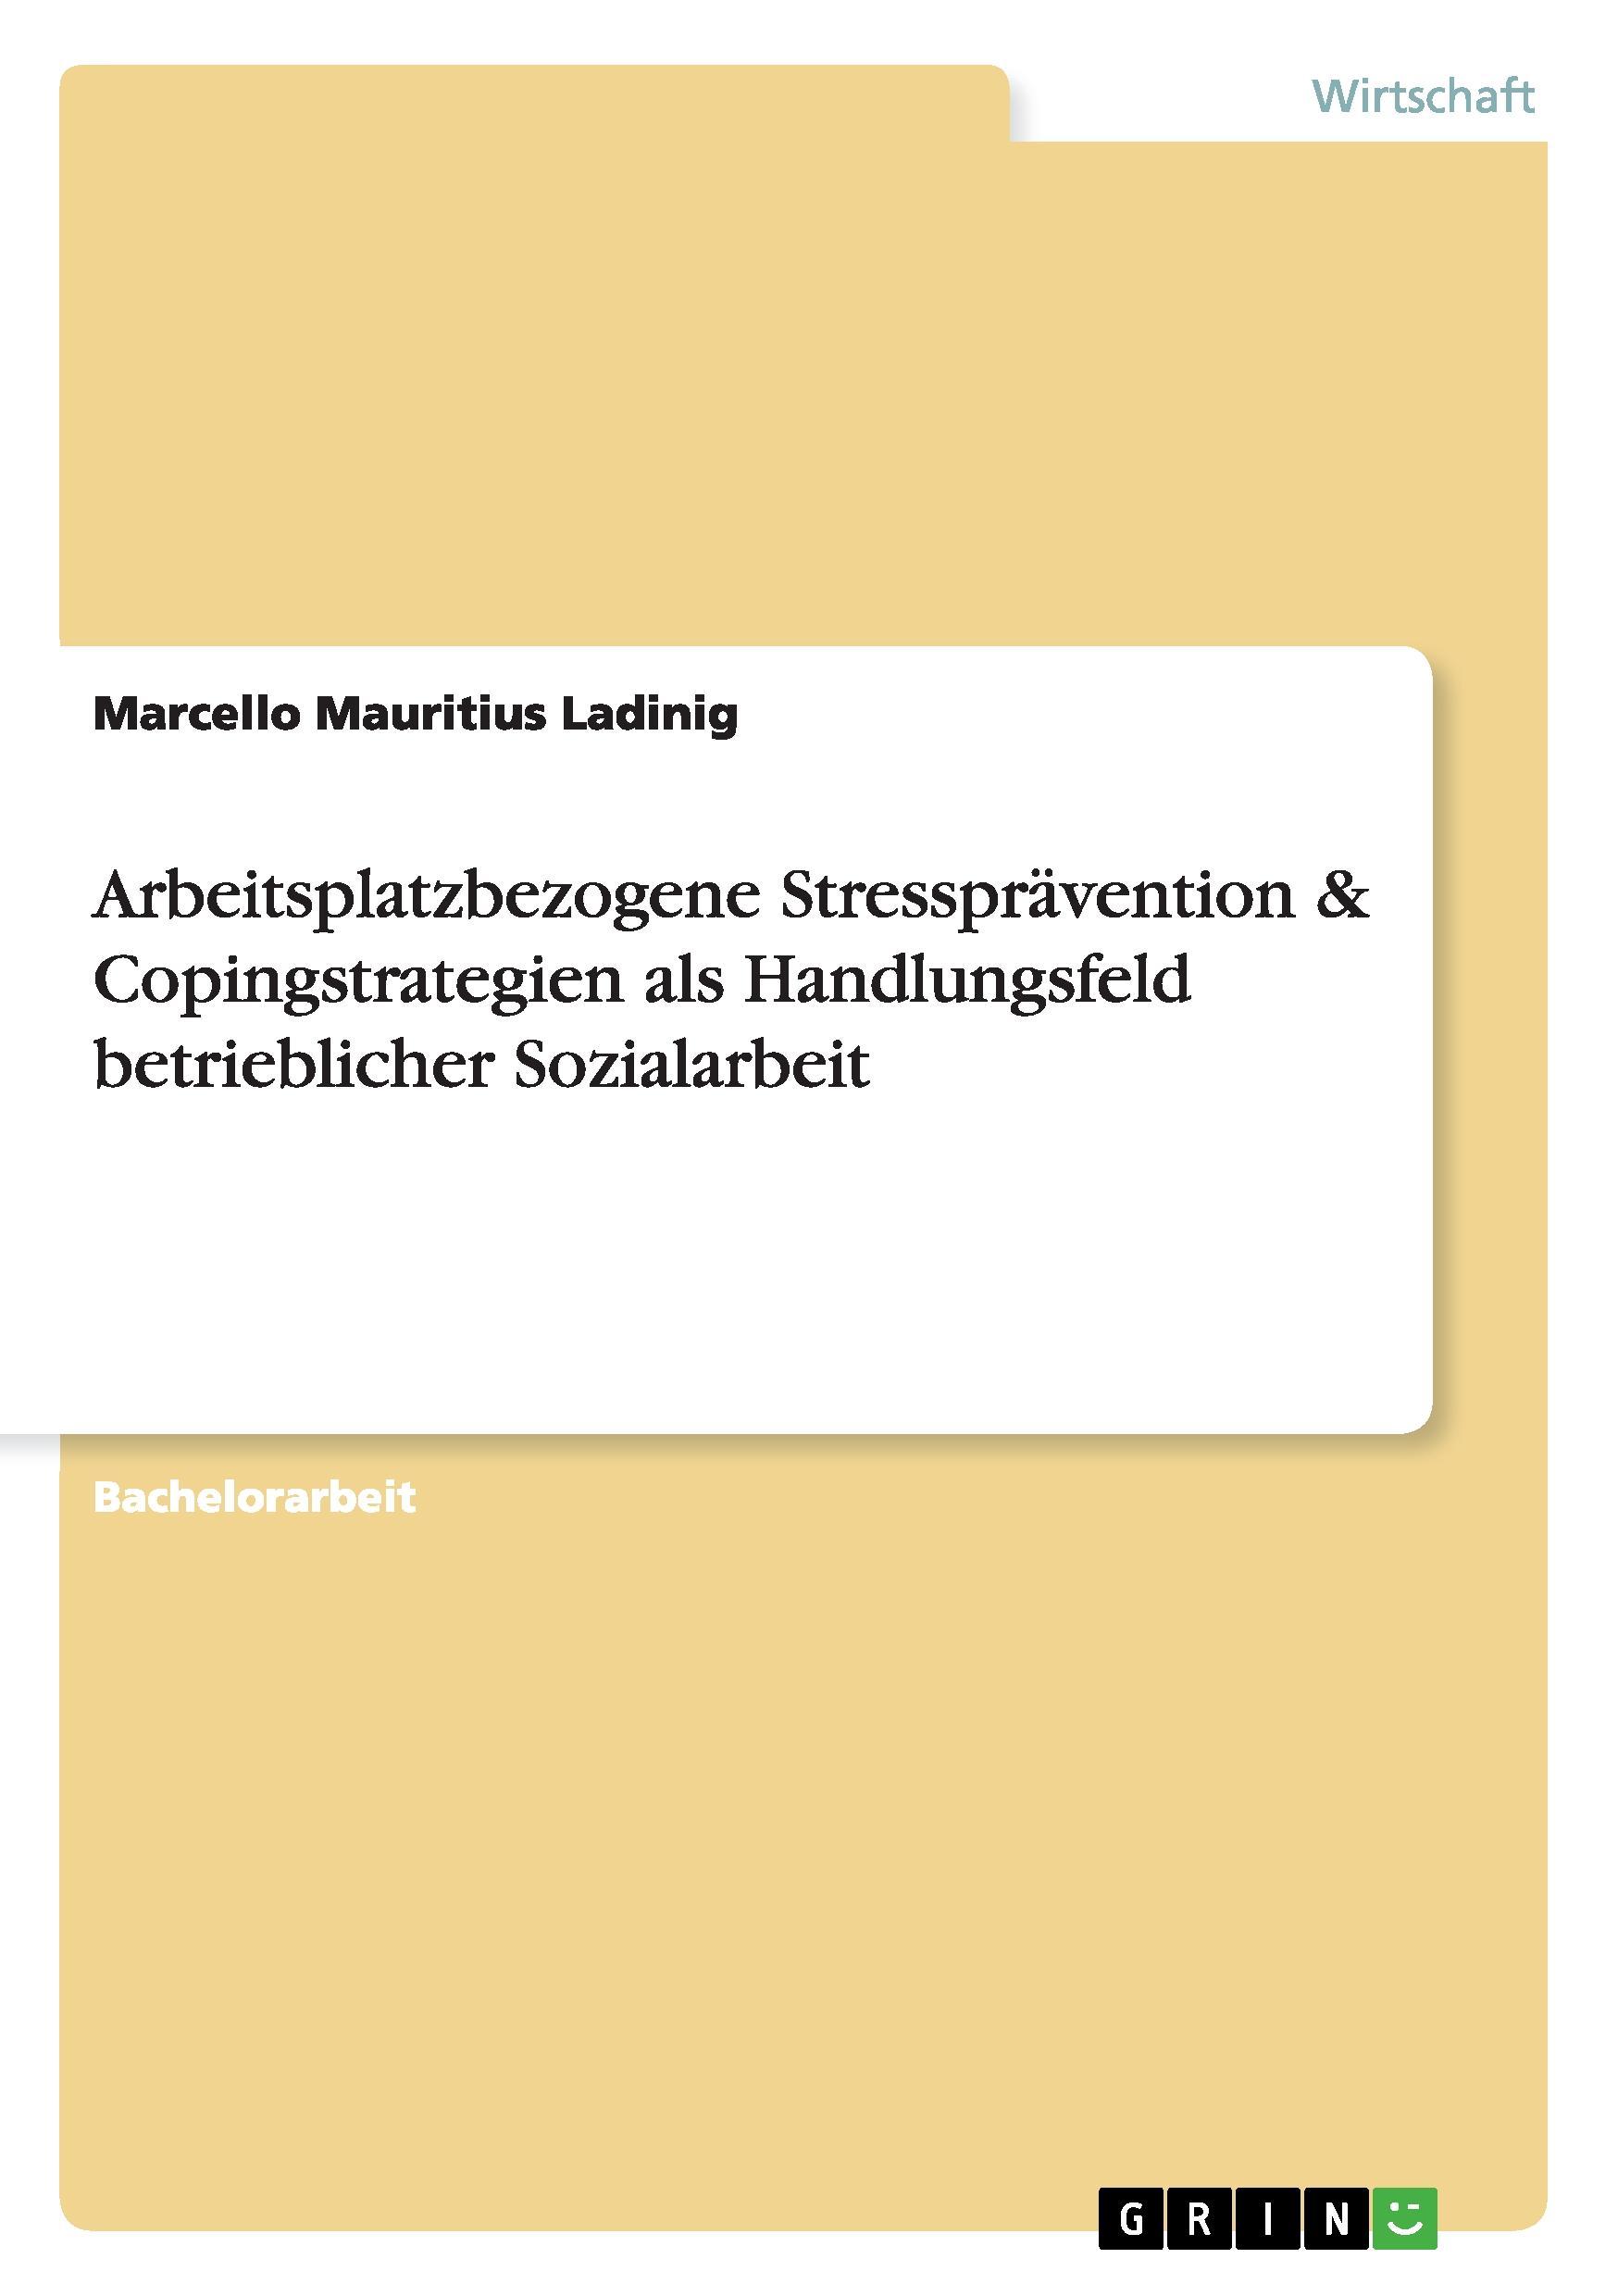 Arbeitsplatzbezogene Stresspraevention & Copingstrategien als Handlungsfeld betrieblicher Sozialarbeit - Ladinig, Marcello Mauritius